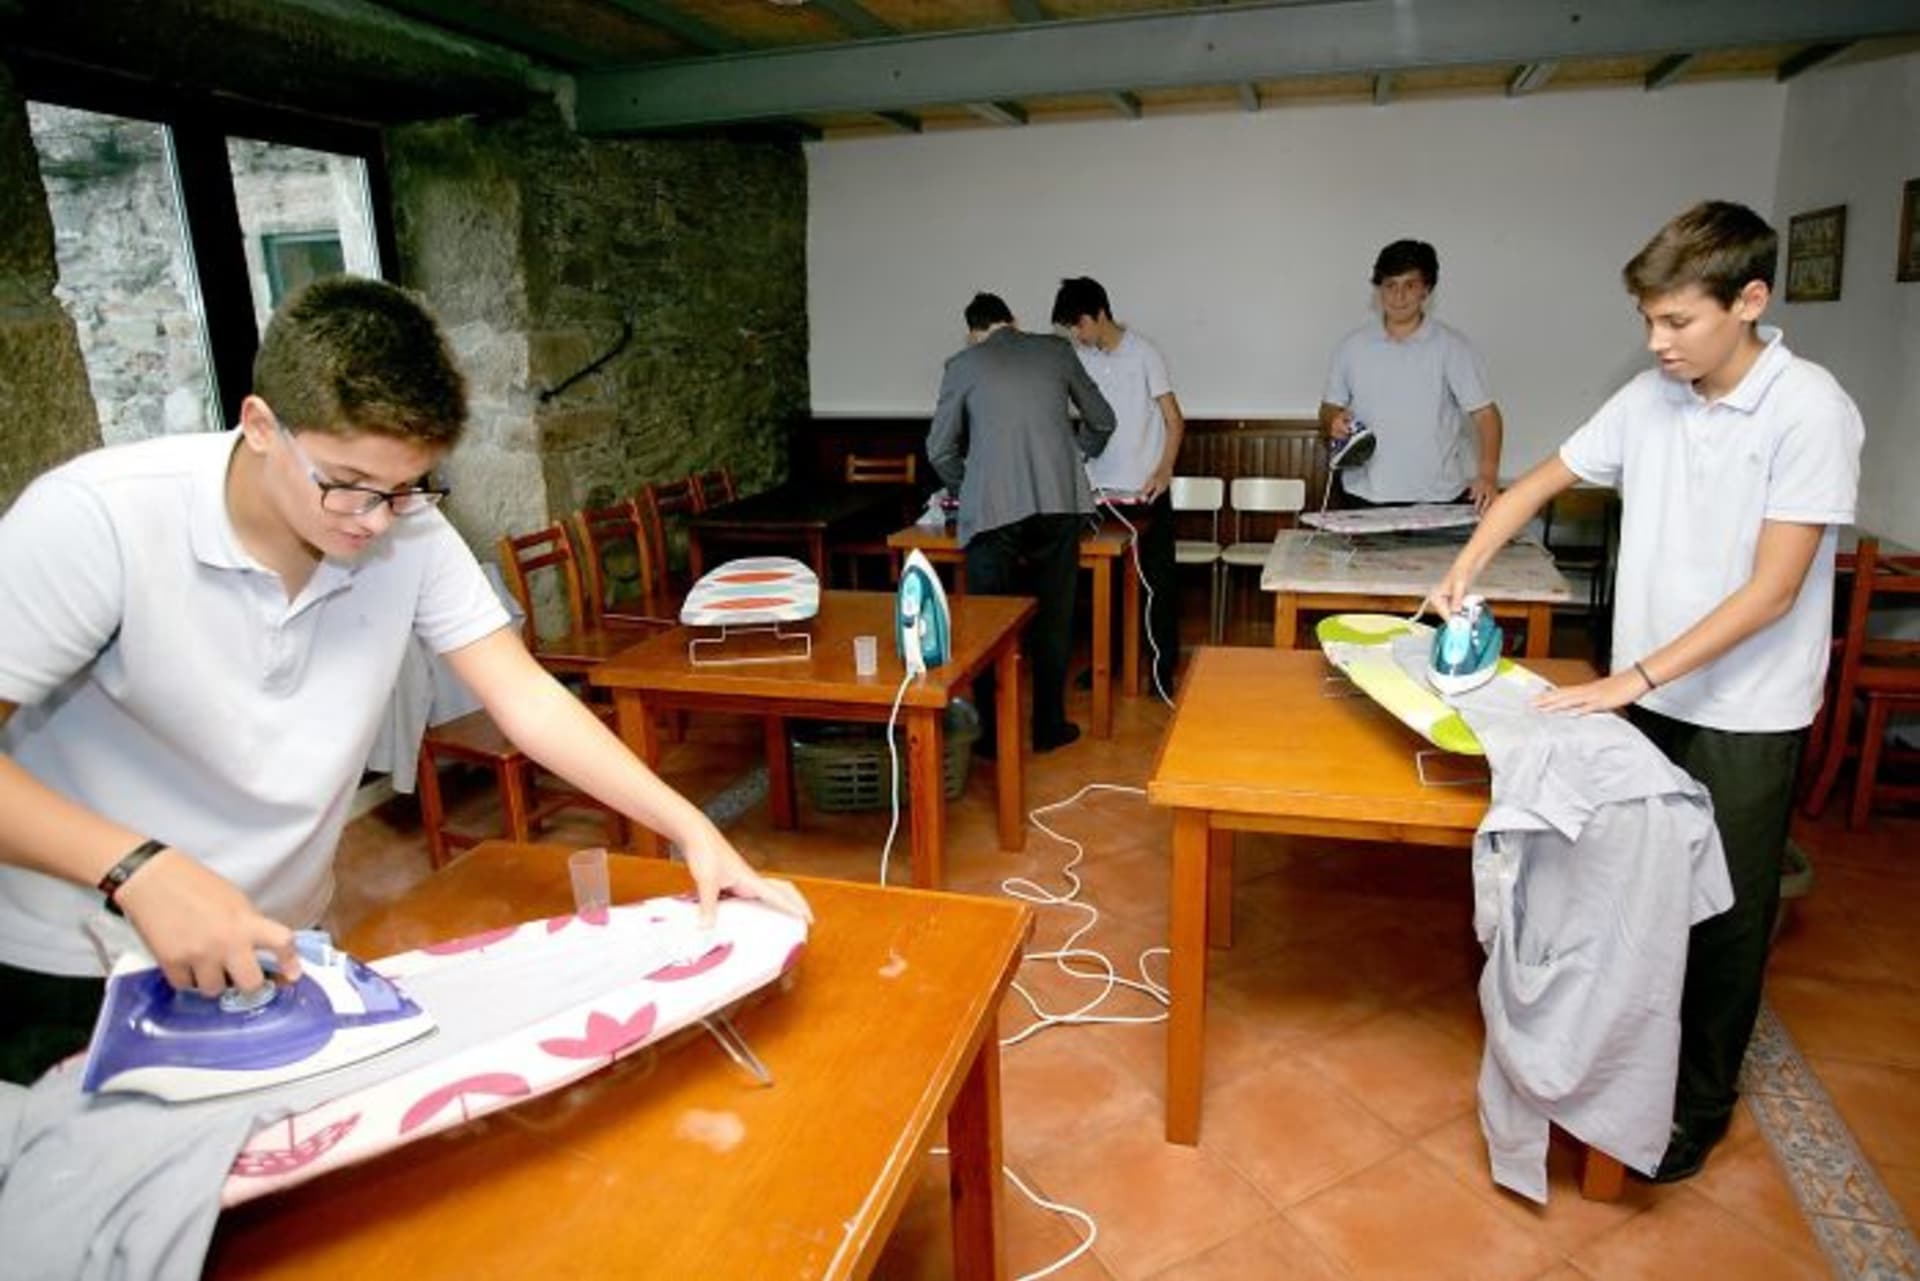 Chlapci se ve škole učí domácím pracím 6